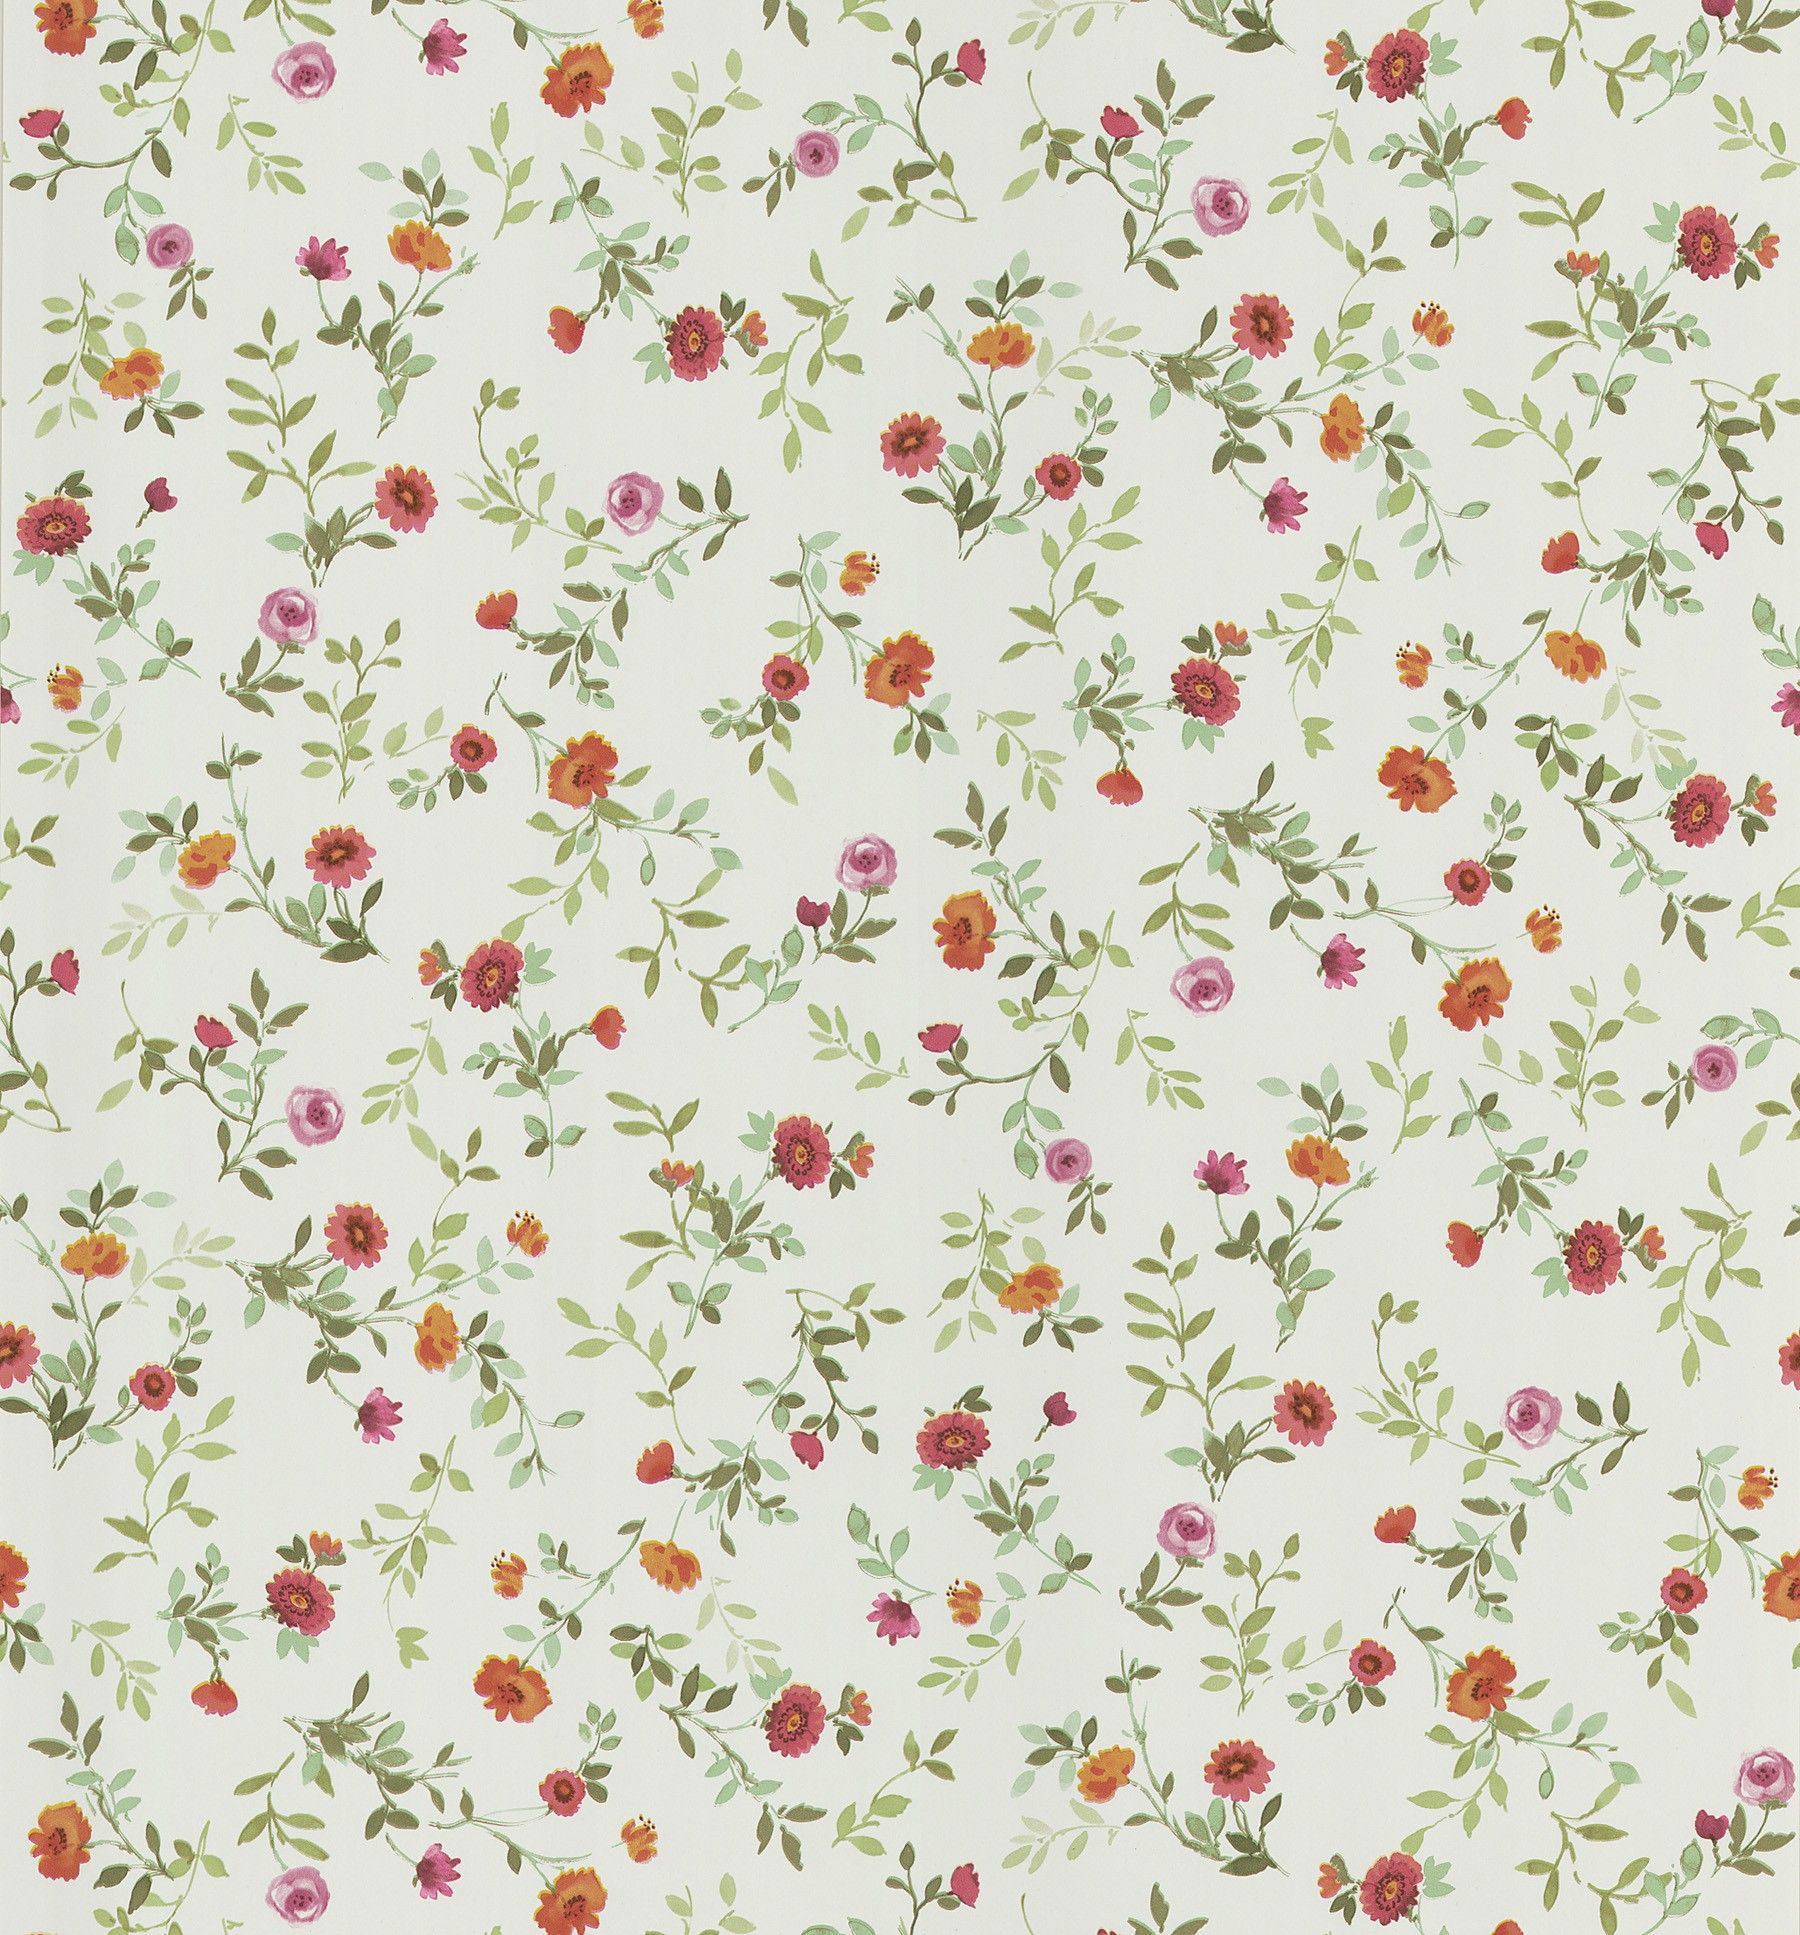 Floral wallpaper best - Web Design